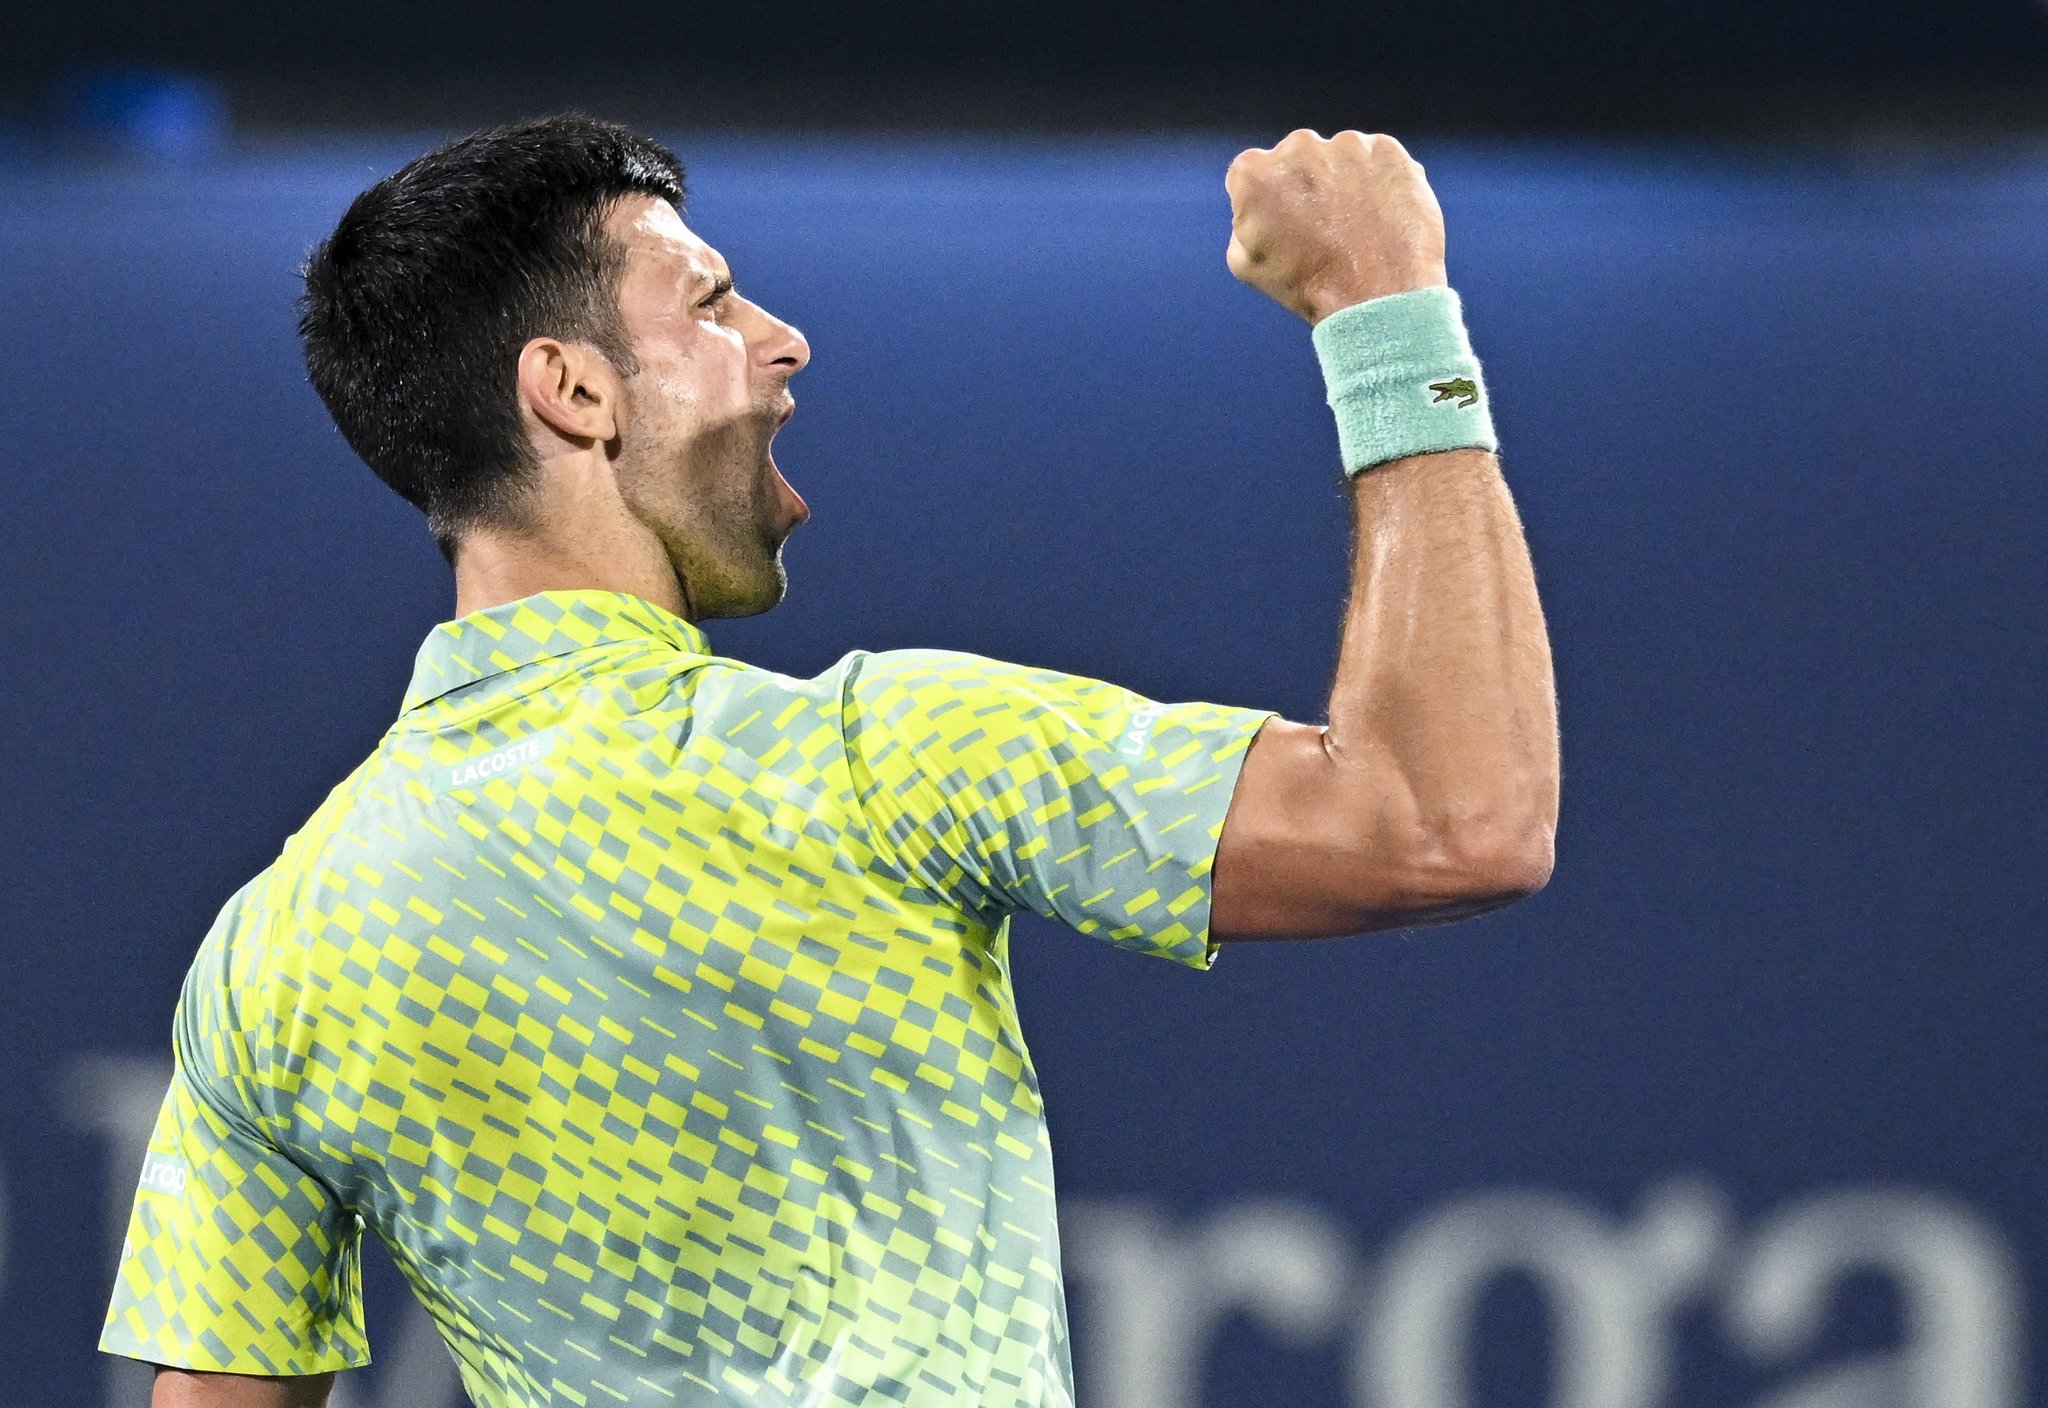 ATP 500 de Dubai Veja como ficaram as quartas de final · Revista TÊNIS